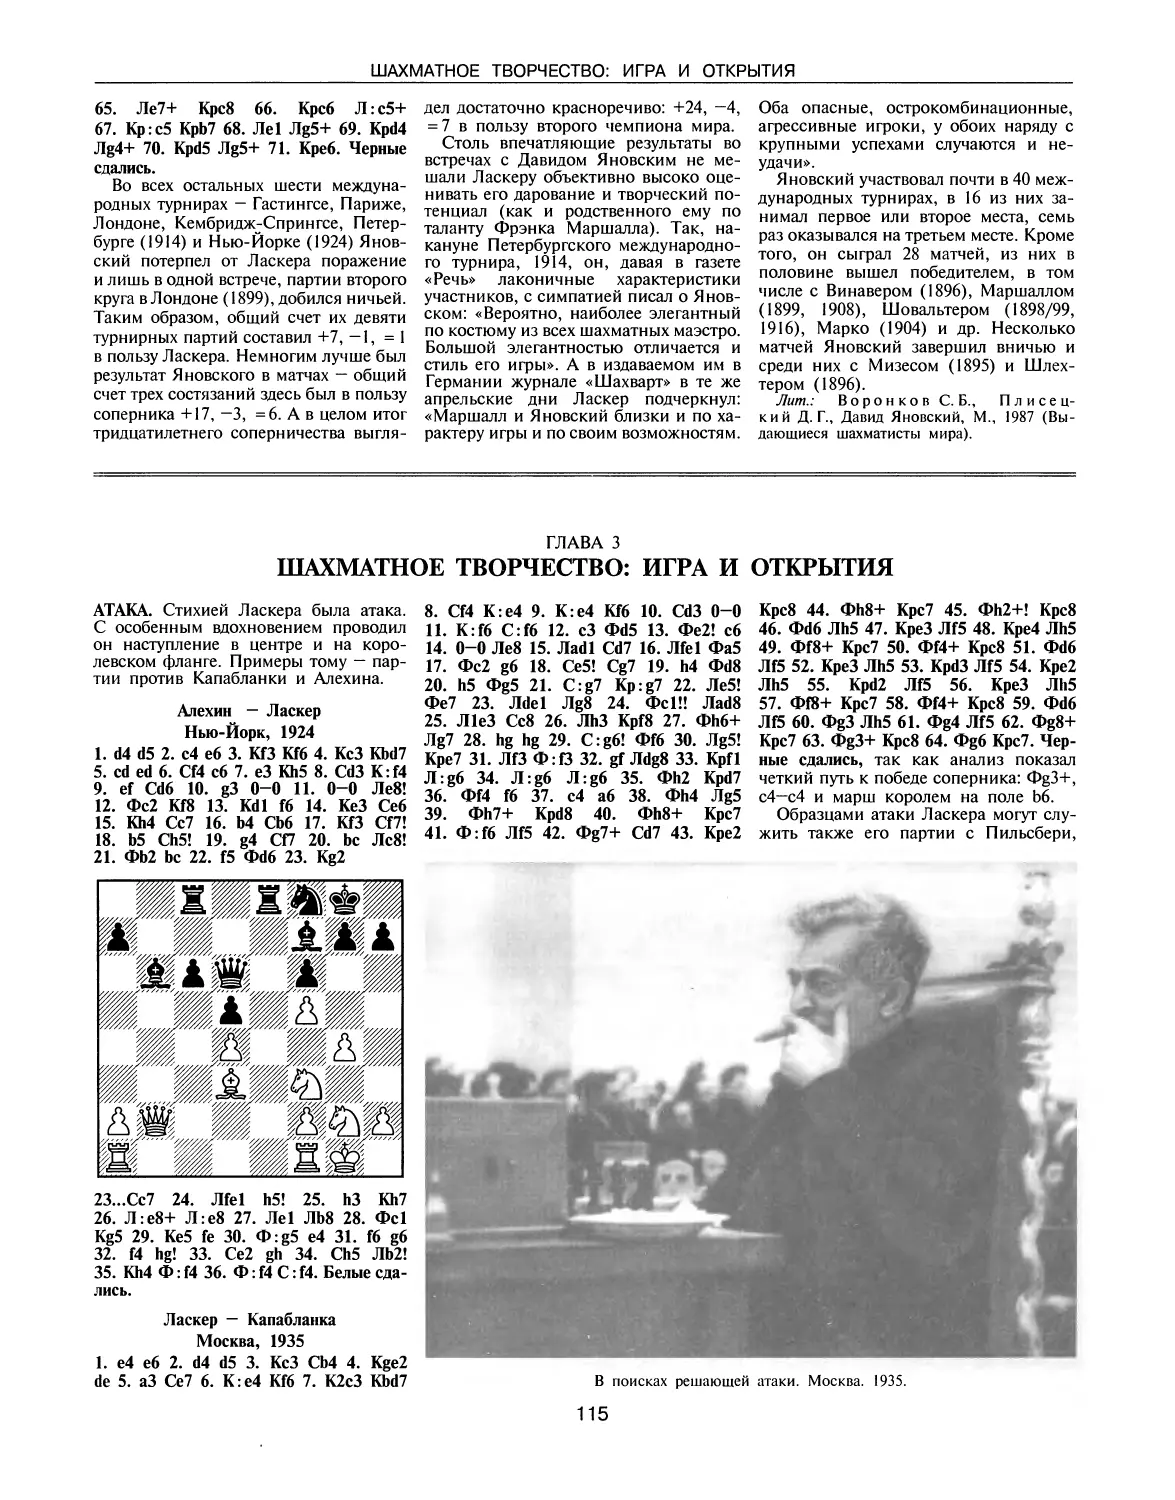 ГЛАВА 3. Шахматное творчество: игра и открытия